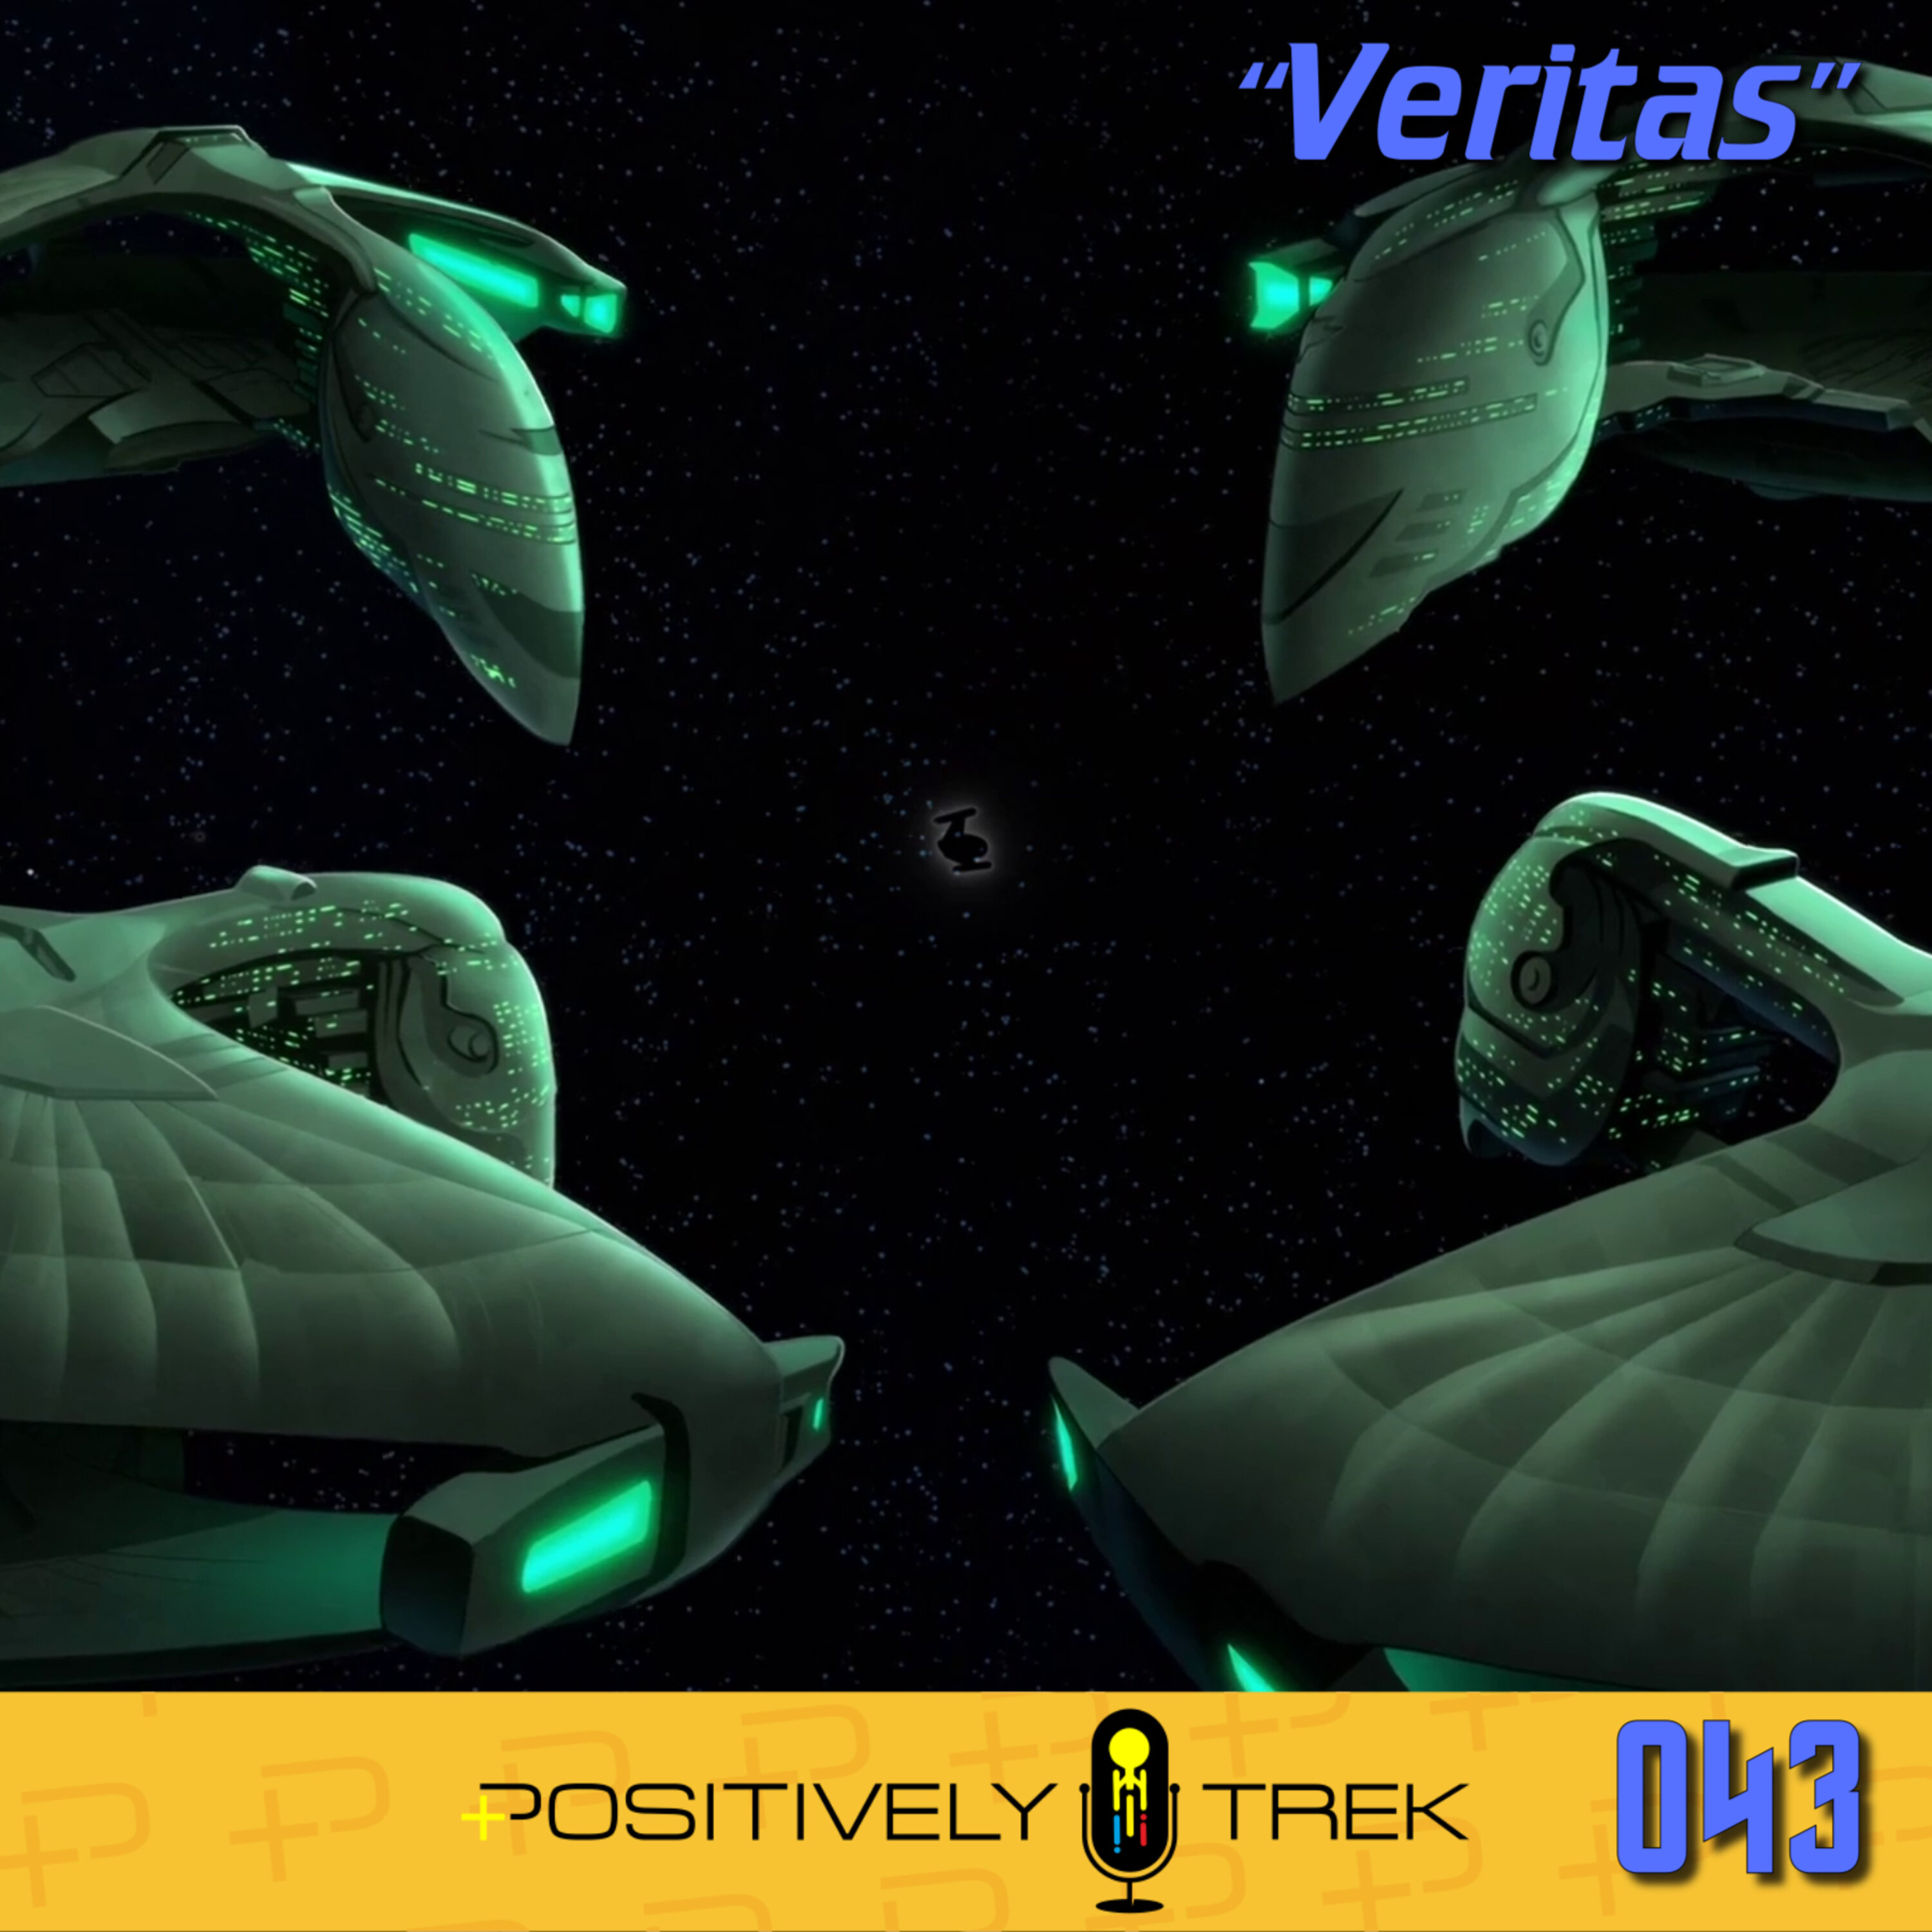 Lower Decks Review: “Veritas” (1.08)